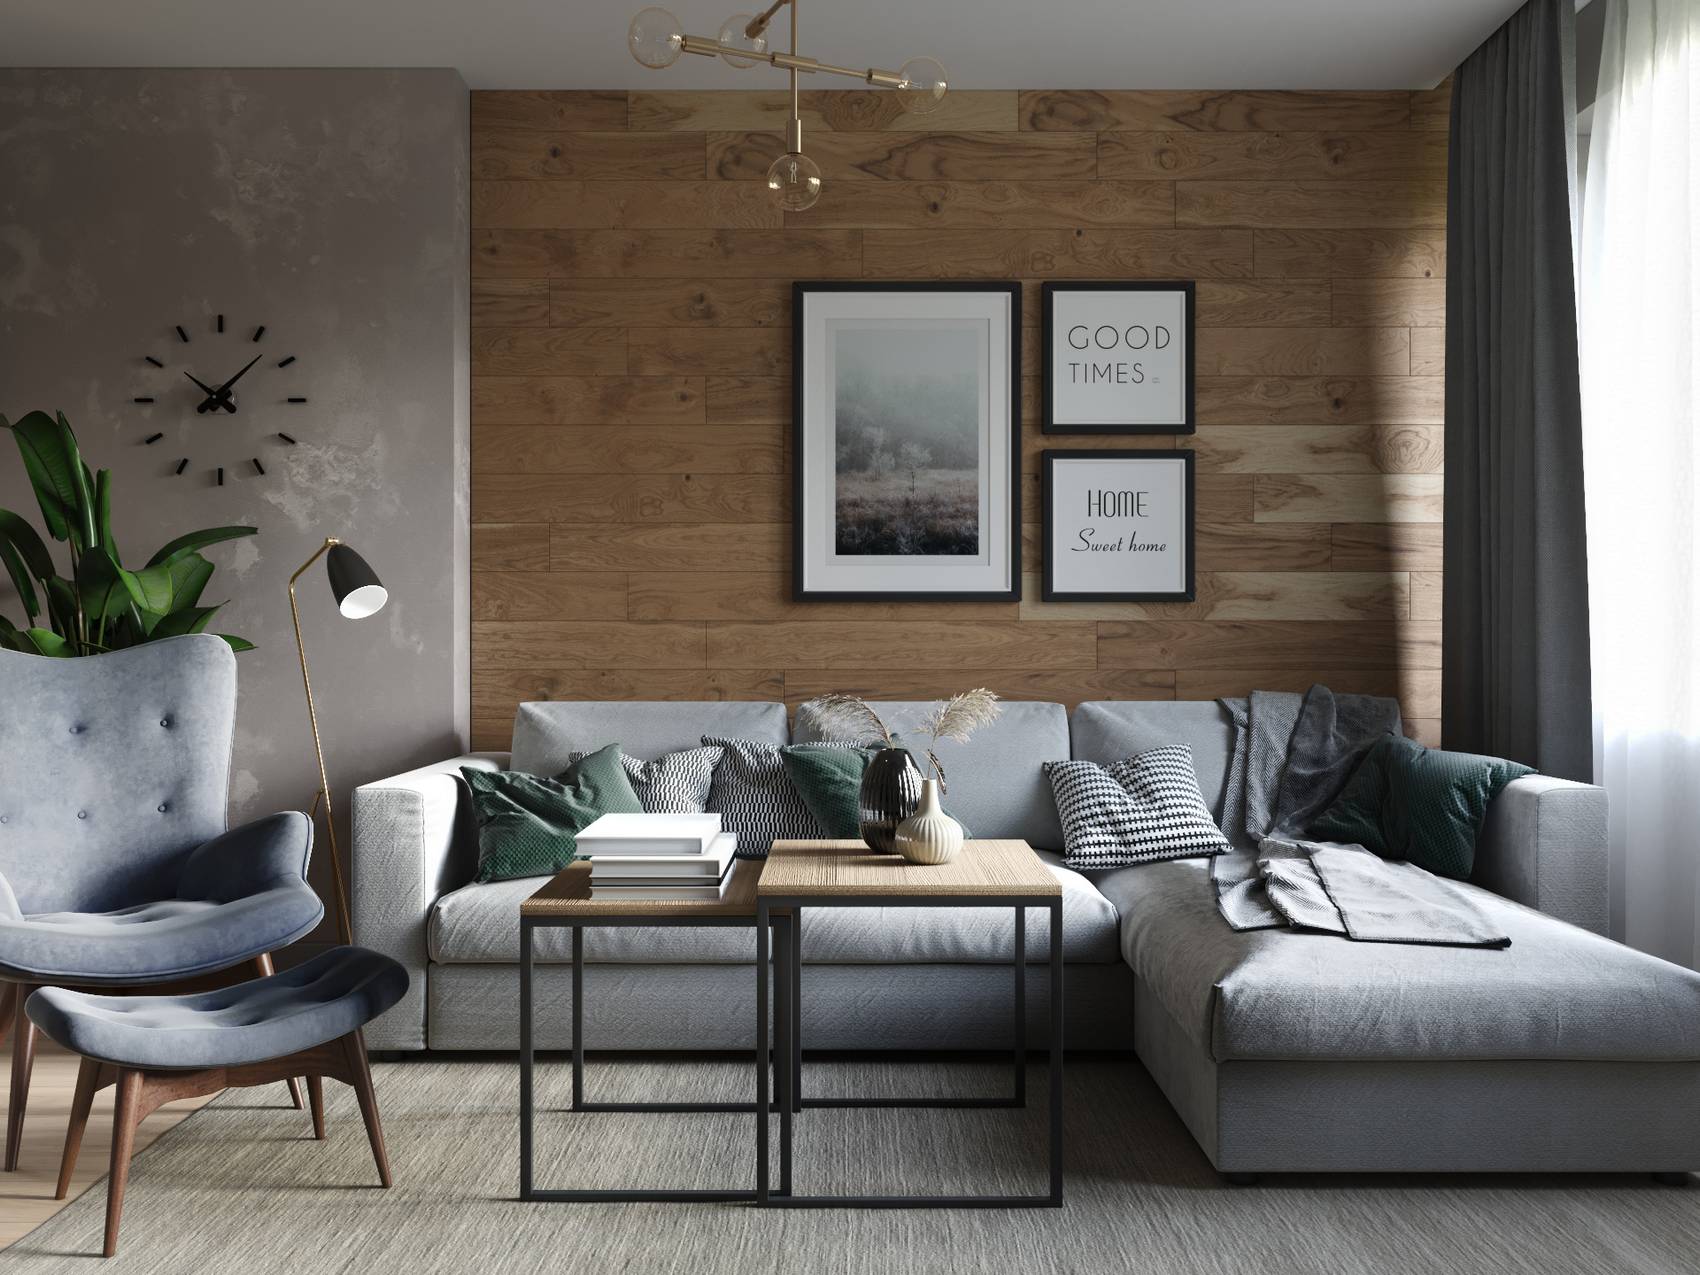 Phòng khách như được 'chia đôi' bởi bức tường màu xám và tường ốp gỗ tự nhiên. Sofa hình chữ L và bàn nước kiểu dáng đơn giản bố trí trên thảm trải sàn đồng màu.